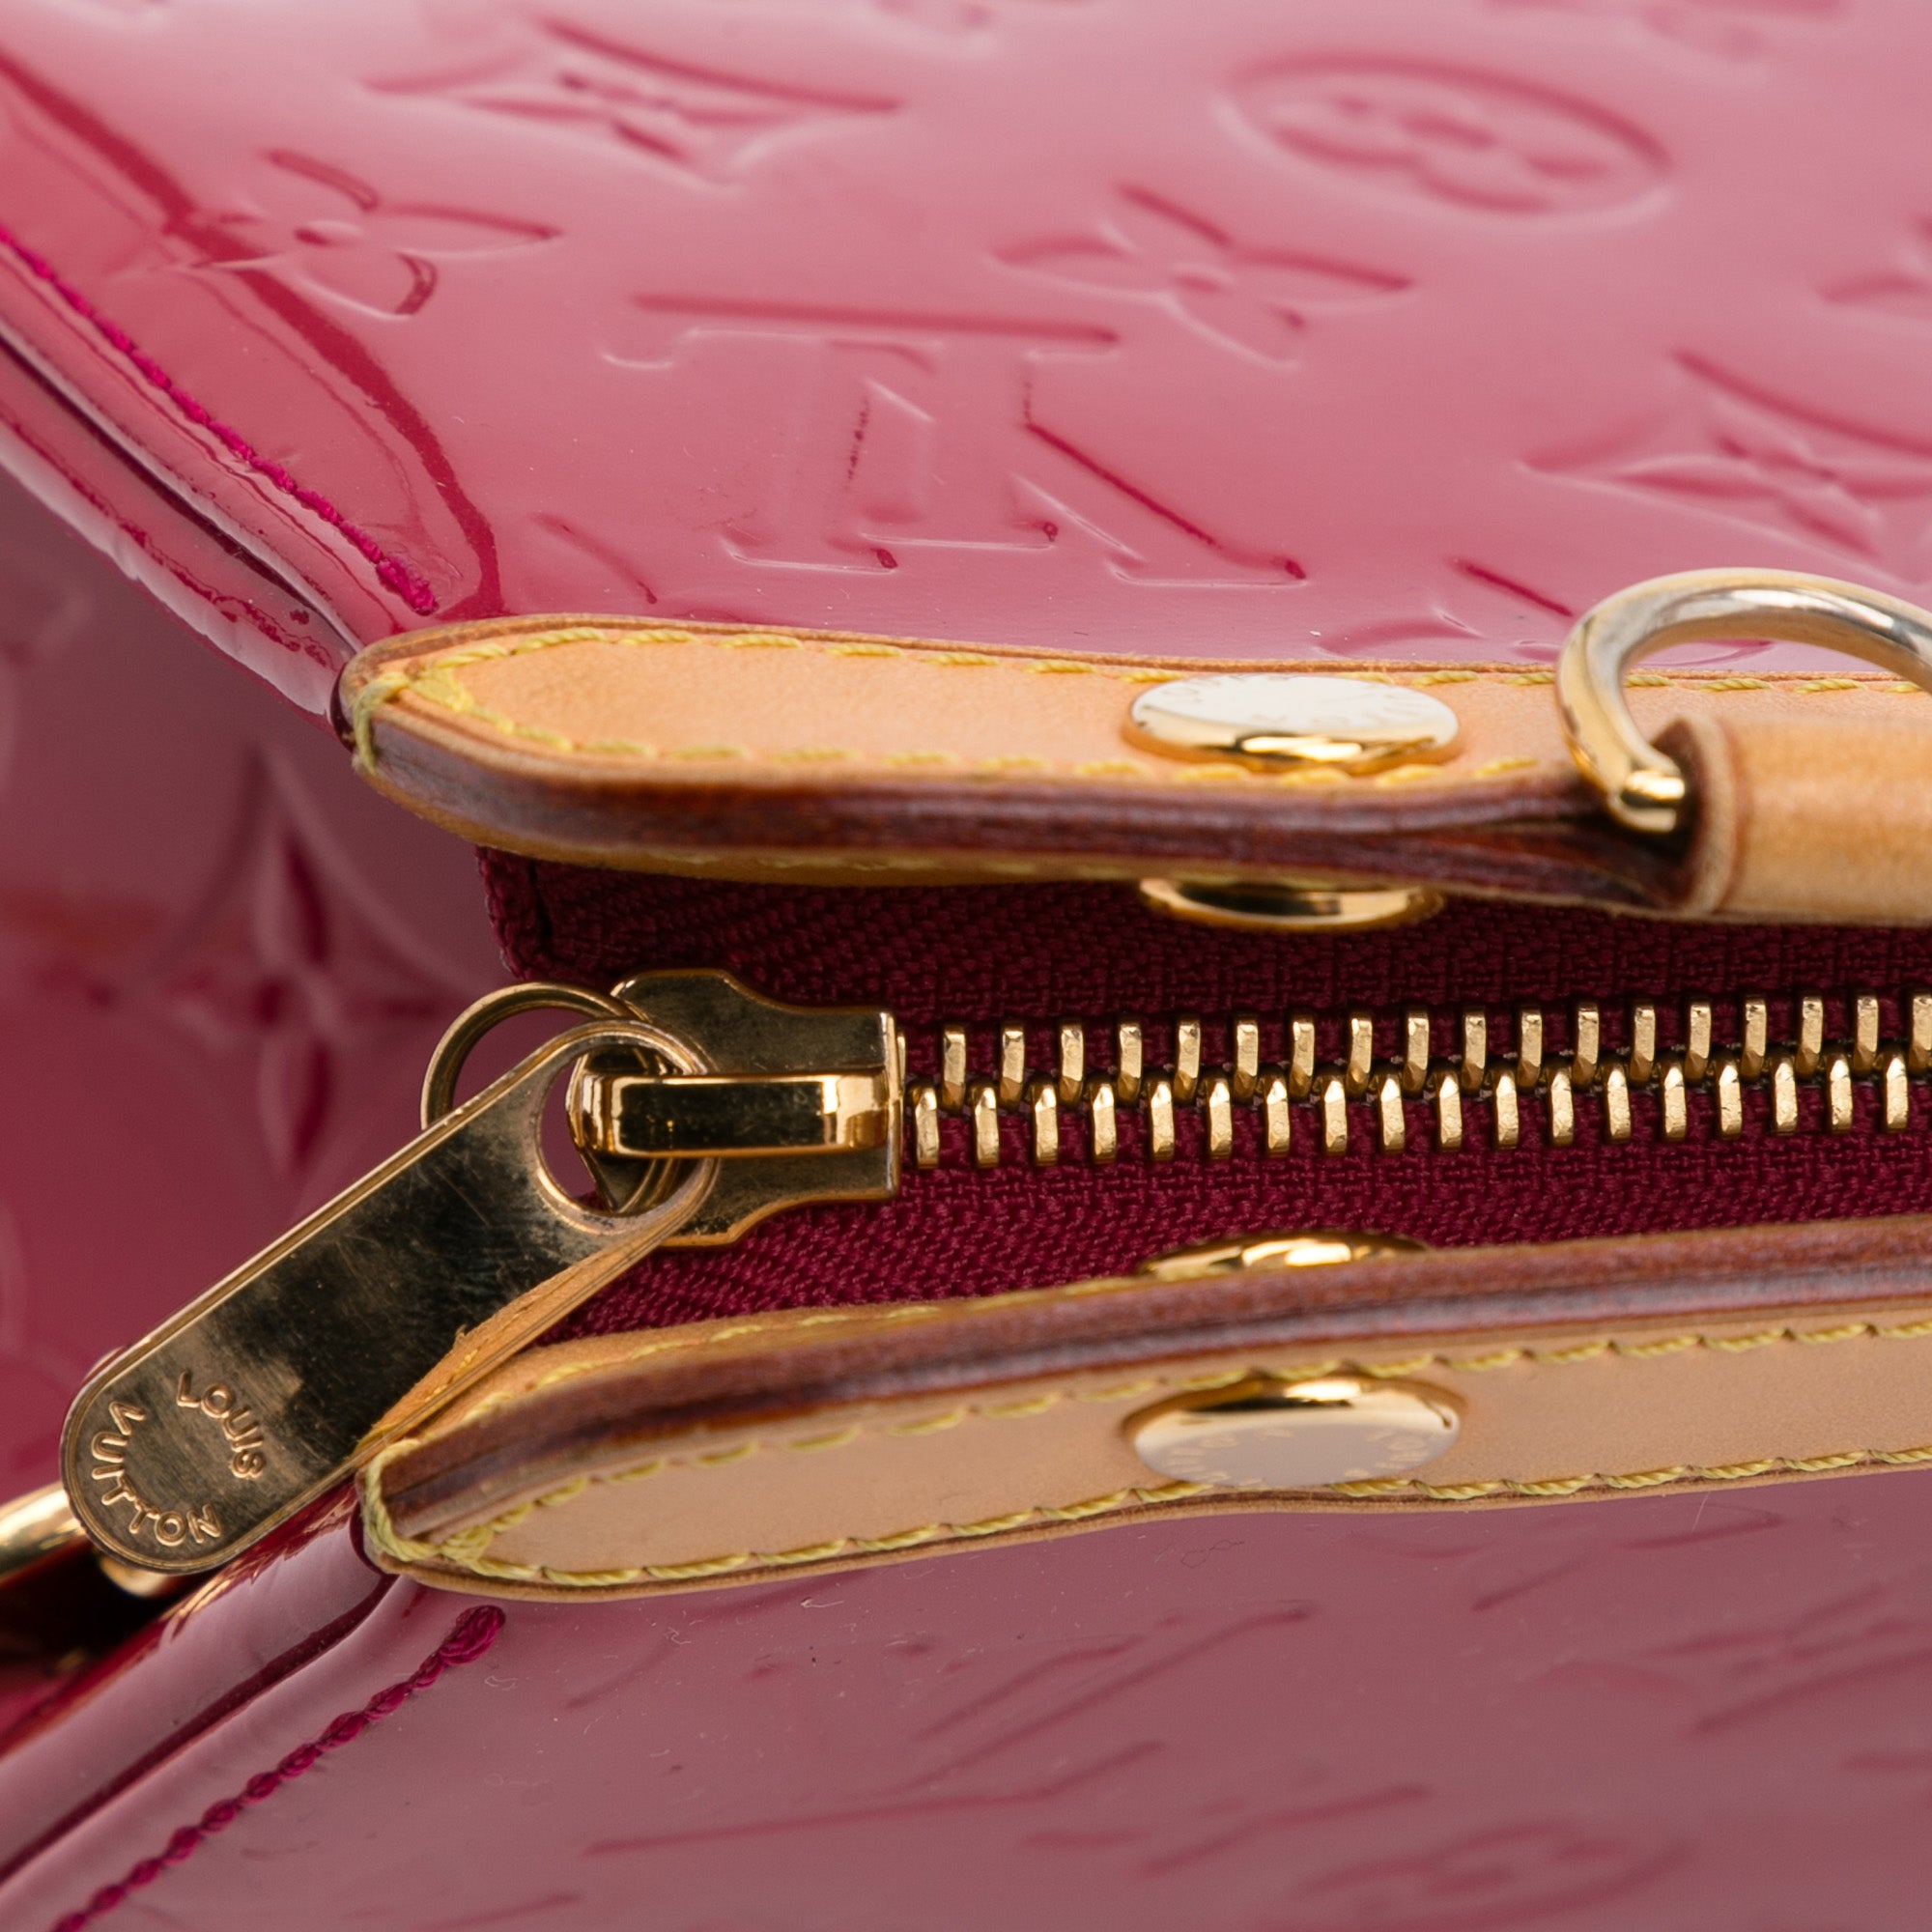 100% Authentic Louis Vuitton Brea MM VERNIS RED shoulder bag